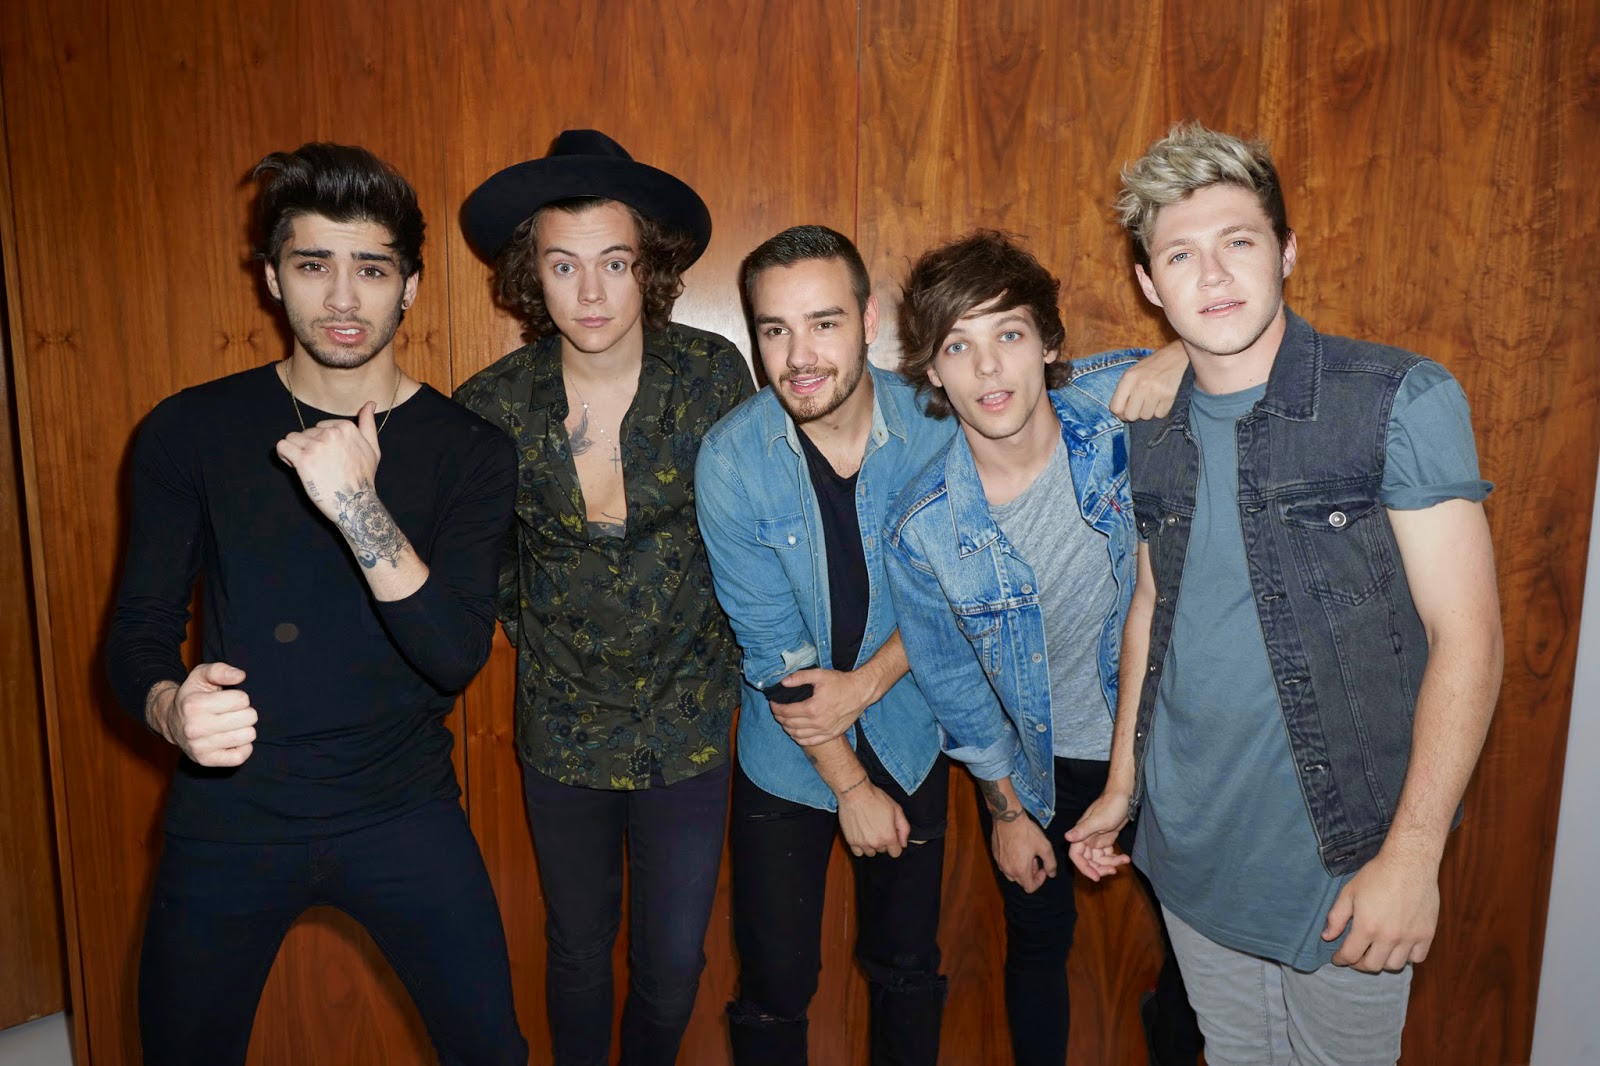 One Direction na era "Four". Da esquerda para a direita: Zayn, Harry (de Fedora preto), Liam, Louis e Niall.